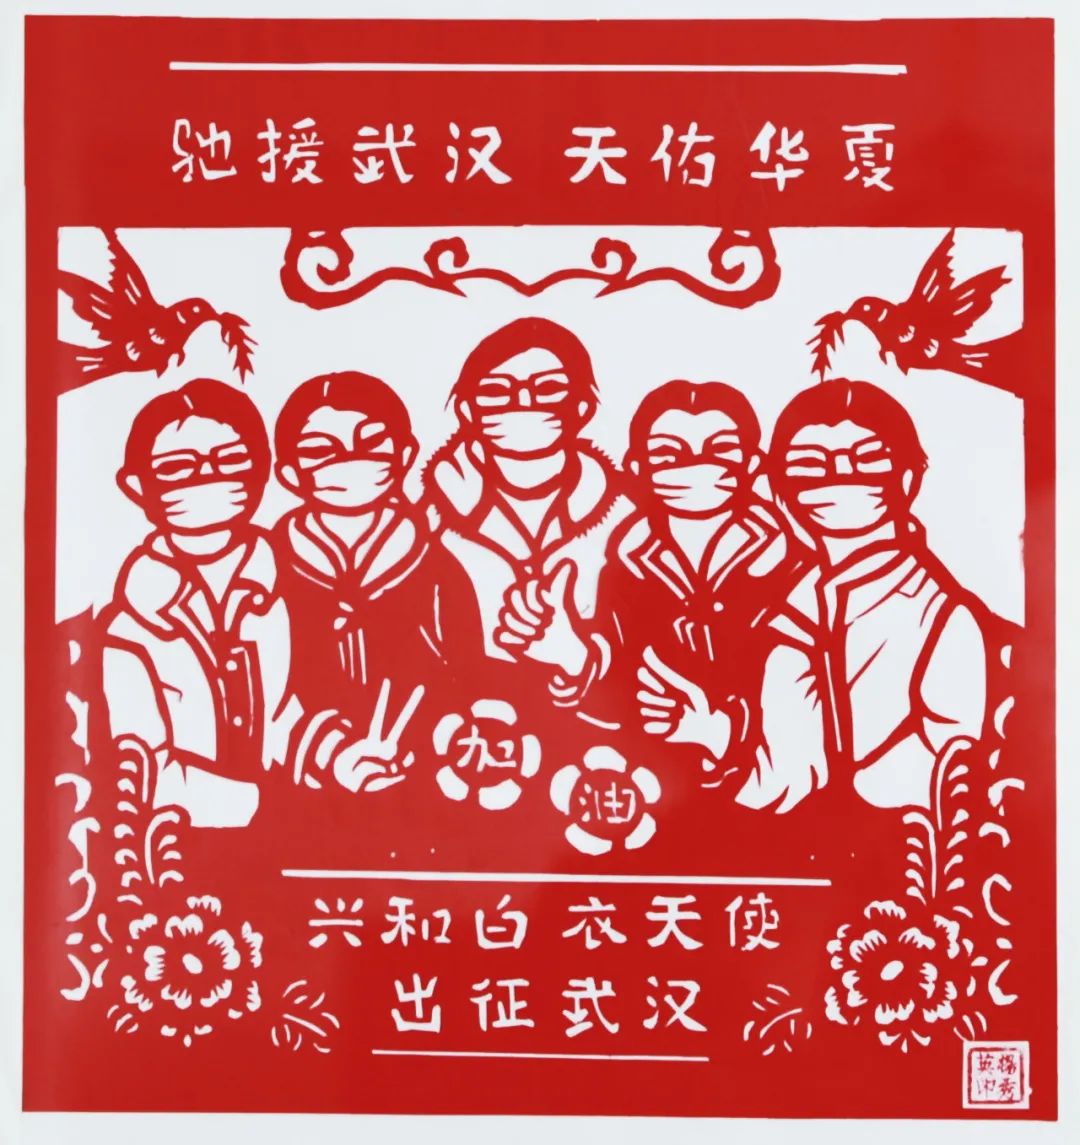 兴和县非遗项目民间剪纸已申报为市级非遗项目，代表性传承人有郑桂花、杨秀英、张换平。